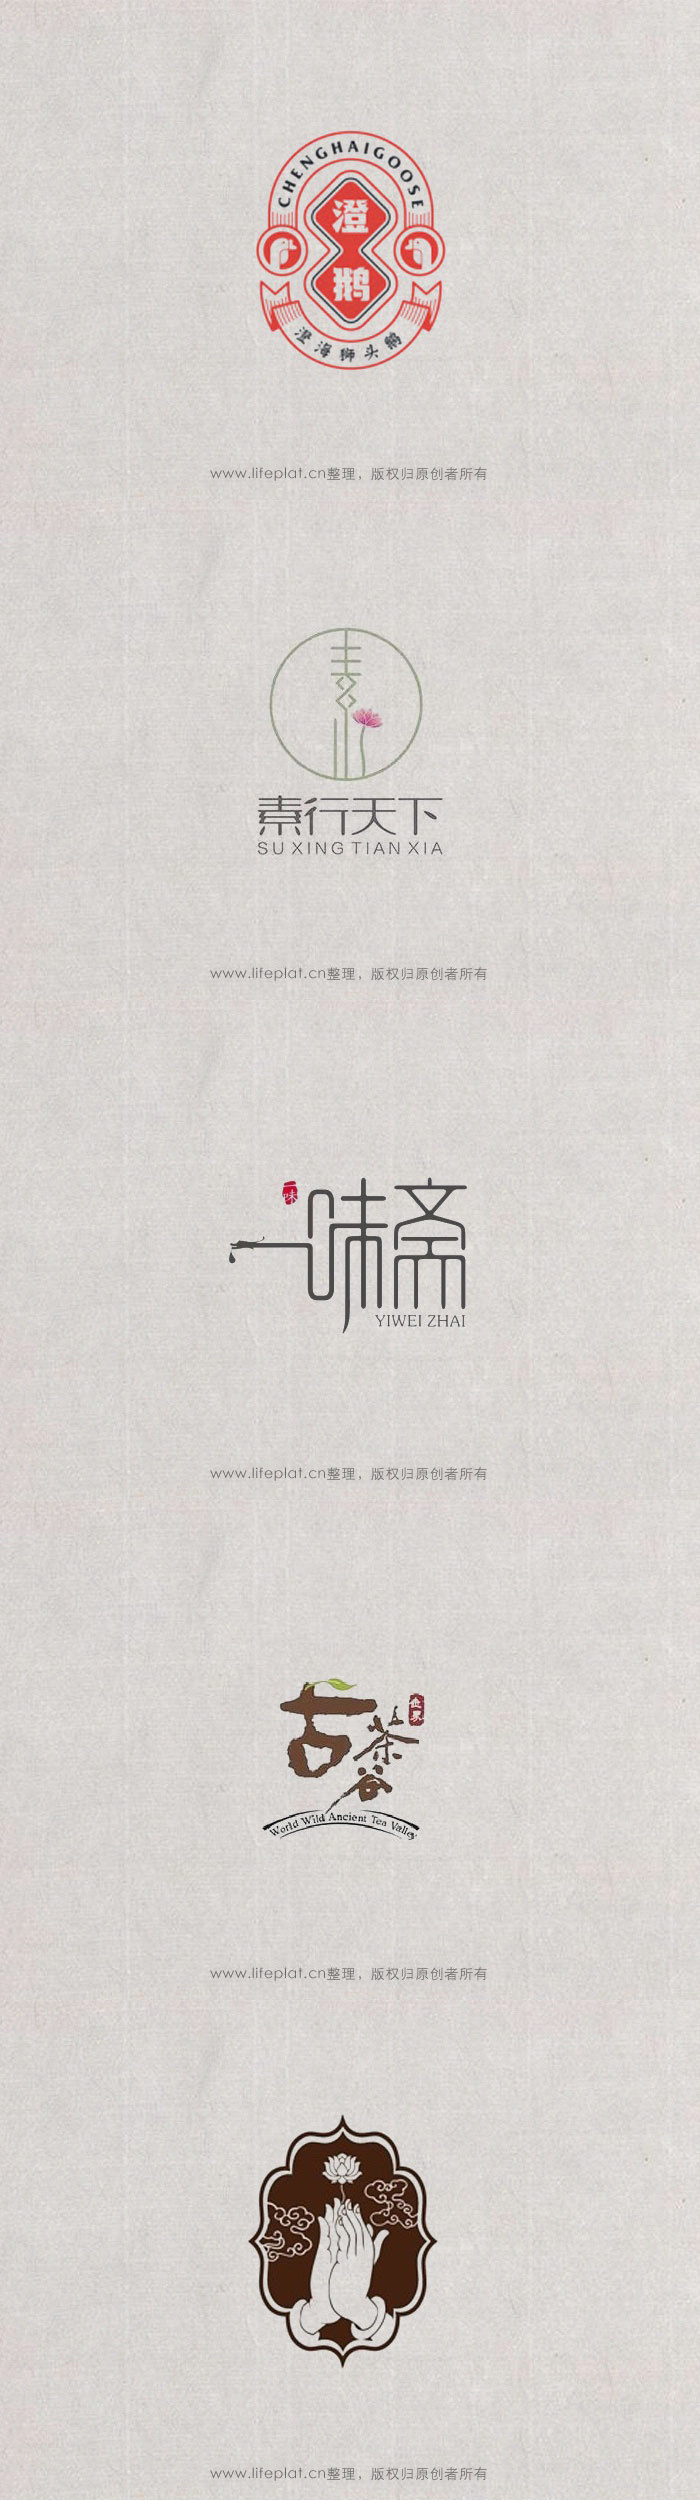 中国风logo设计合辑